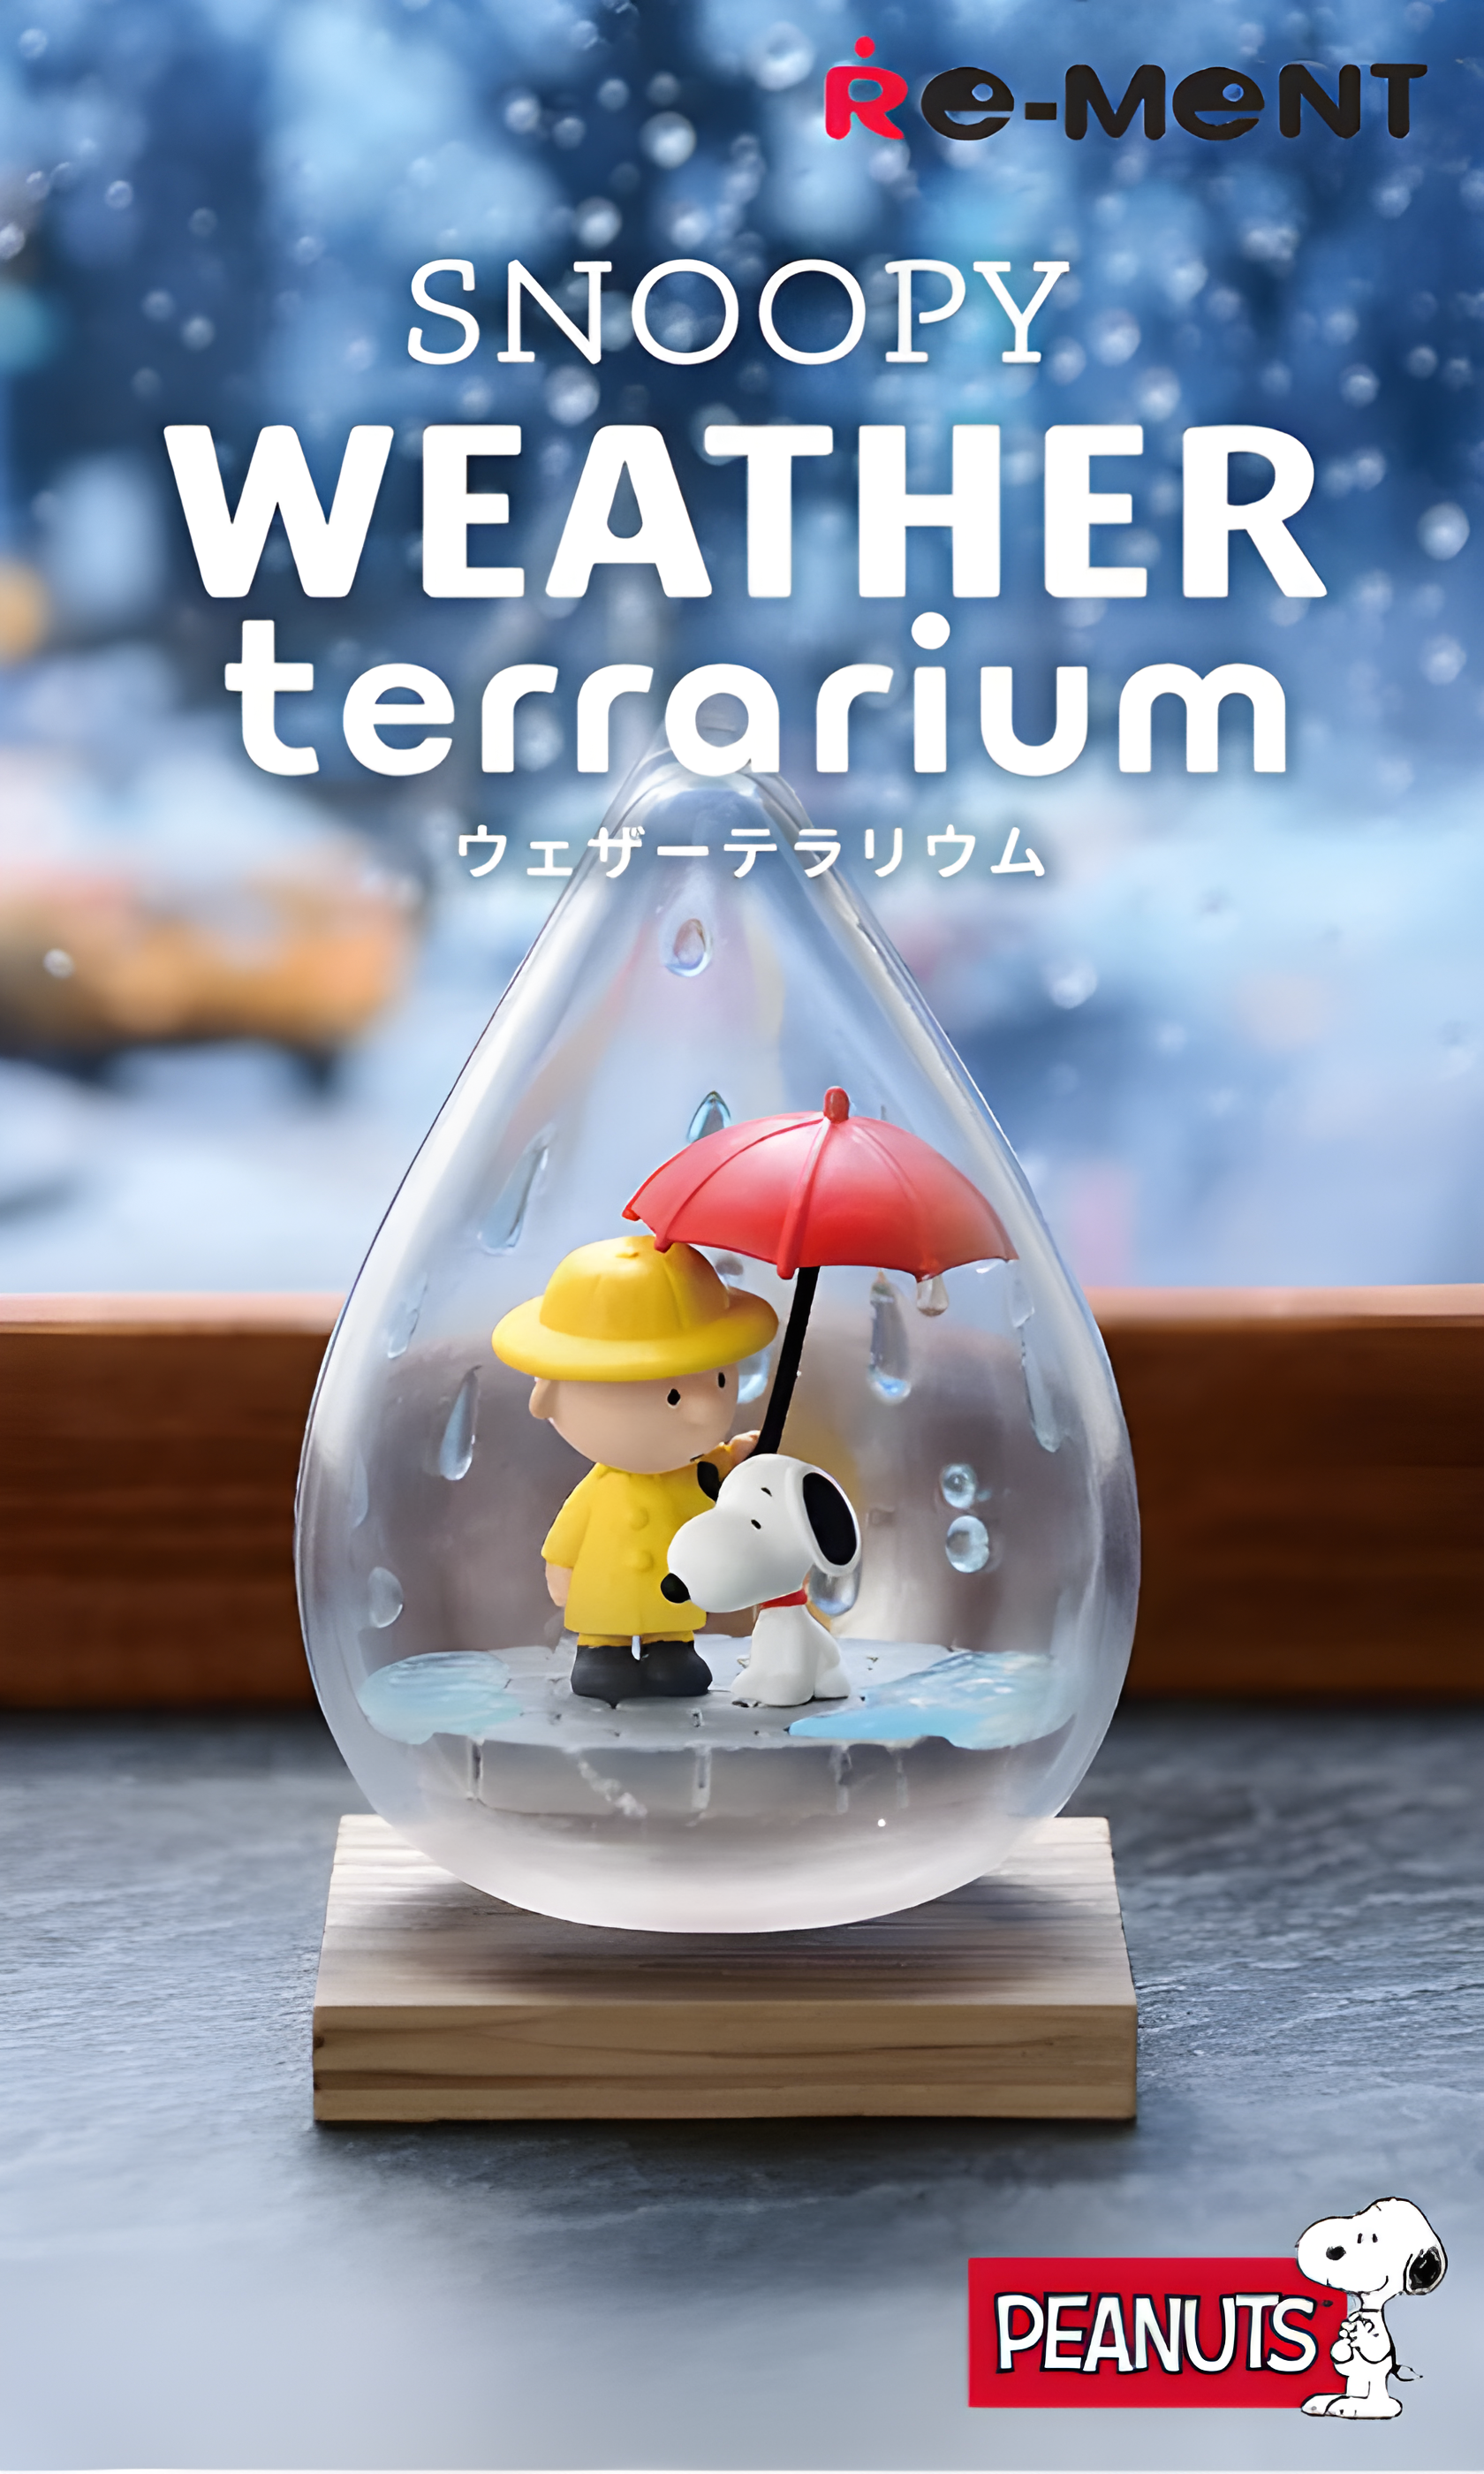 Image promotionnelle Re-Ment Snoopy Weather Terrarium